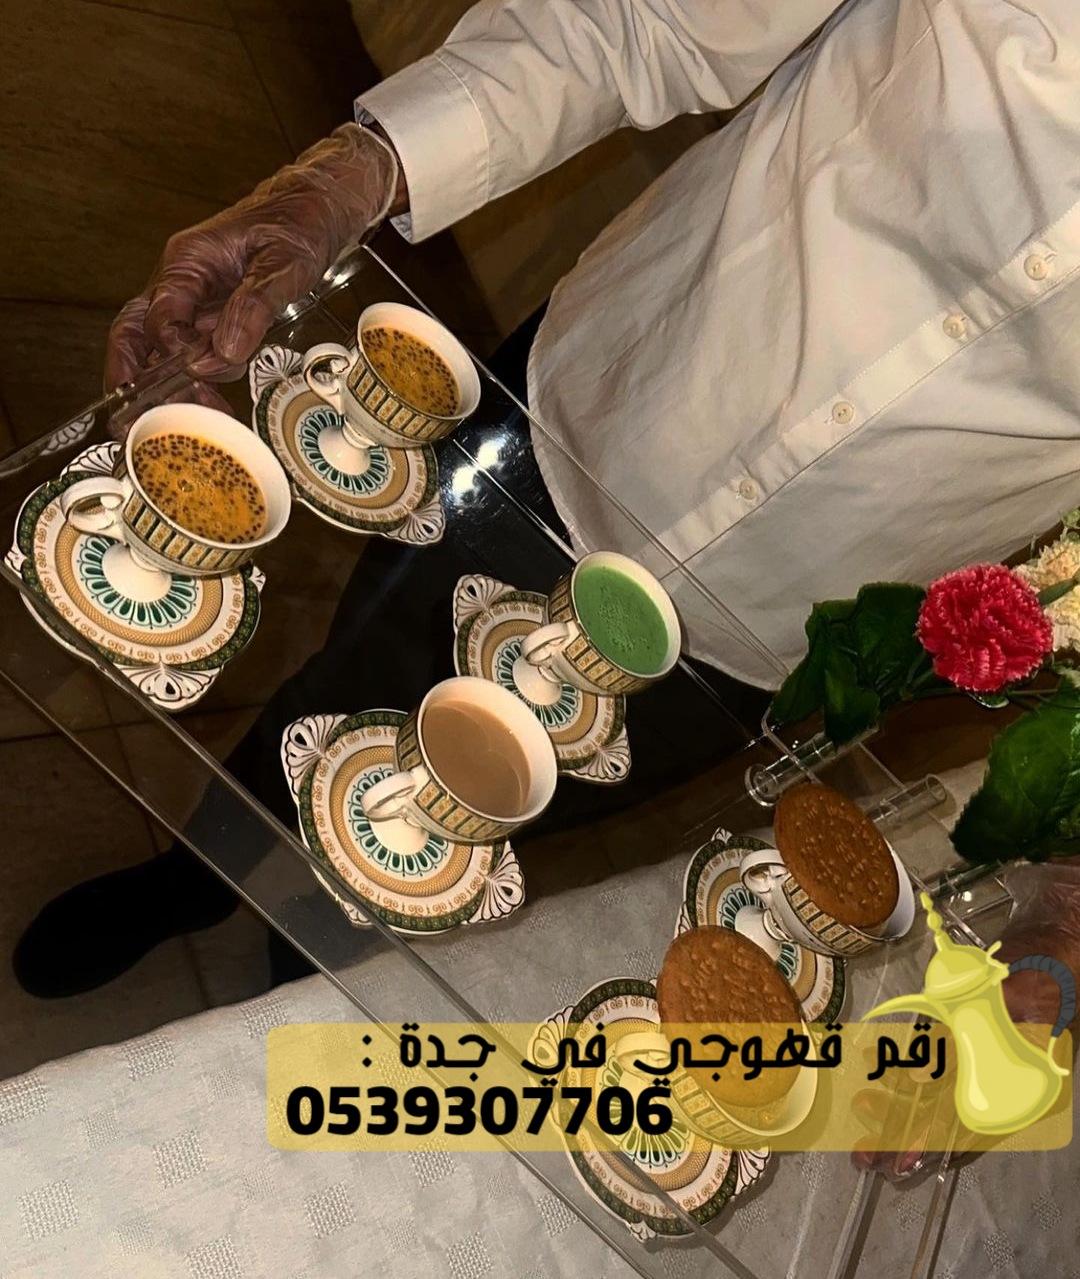 صبابين قهوه و مباشرين في جدة, 0539307706 612729244